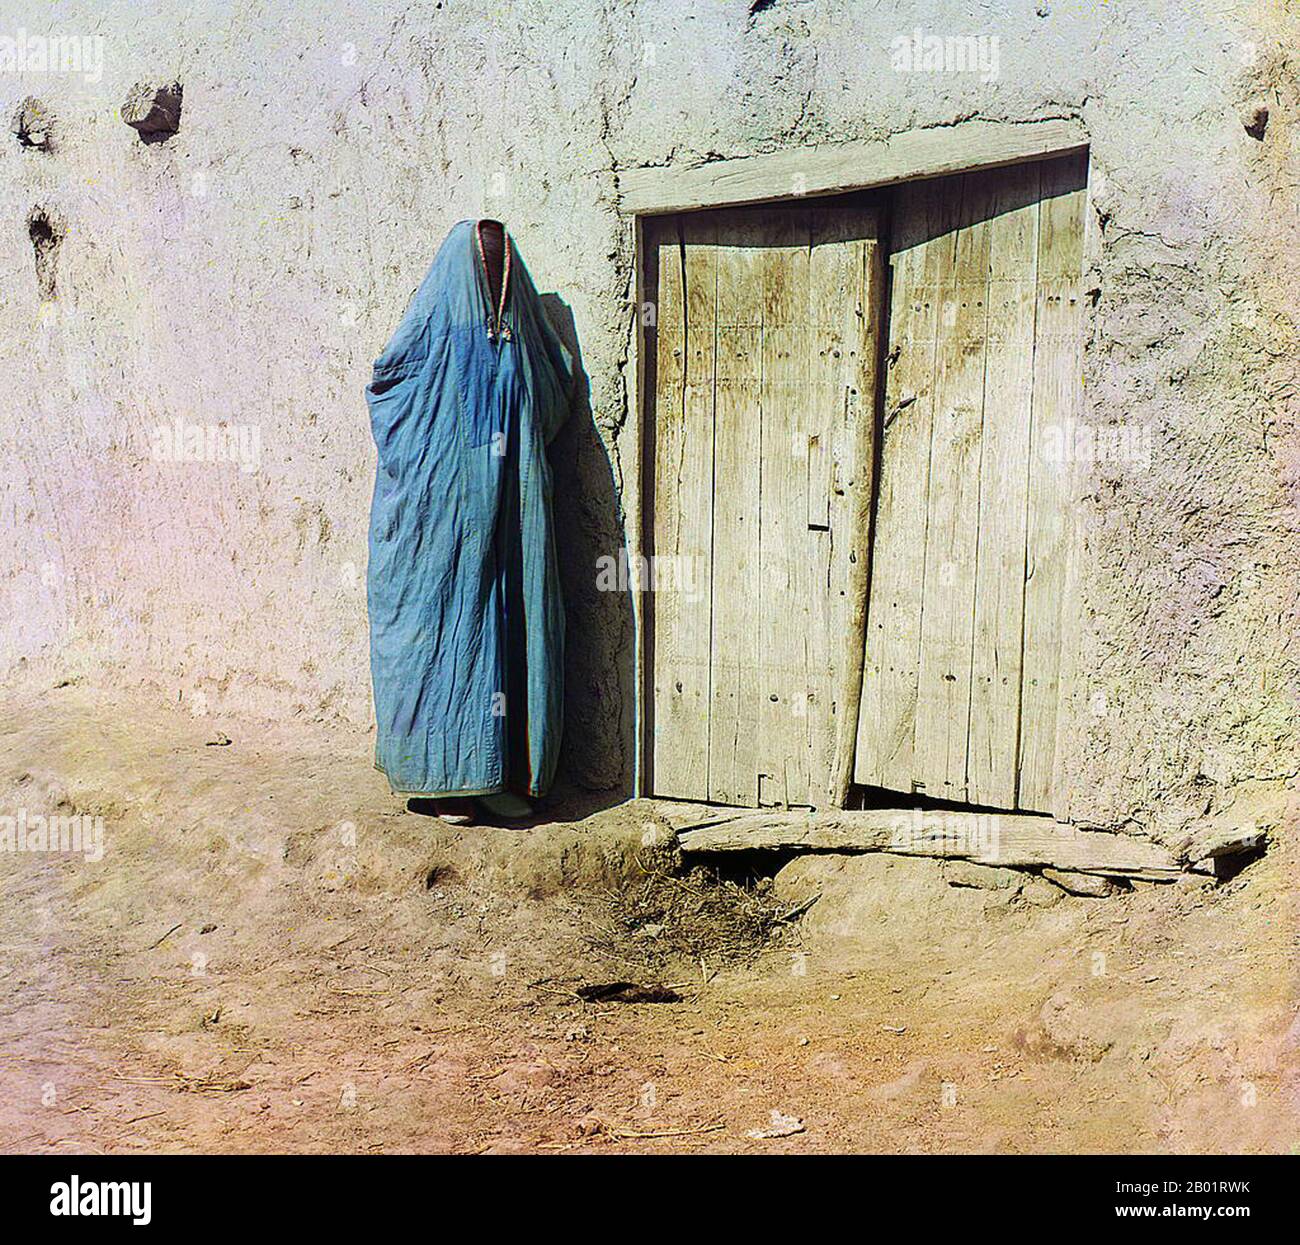 Usbekistan: "SART Woman. Samarkand. Eine Frau in Purdah, die neben einer Holztür steht. Foto von Sergej Michailowitsch Prokudin-Gorskii (31. August 1863 - 27. September 1944), ca. 1905-1915. Eine Paranja oder Paranji, auf Arabisch als „Burka“ bekannt, ist ein traditionelles zentralasiatisches Gewand für Frauen, das sie von Kopf bis Fuß umhüllt. In den 1800er Jahren mussten Frauen der Tadschiken und usbekischen Muslime Paranja tragen, wenn sie außerhalb ihres Hauses waren. Während der Sowjetunion wurden sie verboten, obwohl einige Usbeken sich gewaltsam gegen die Paranja wandten. Heutzutage tragen die meisten zentralasiatischen Frauen keine Paranja. Stockfoto